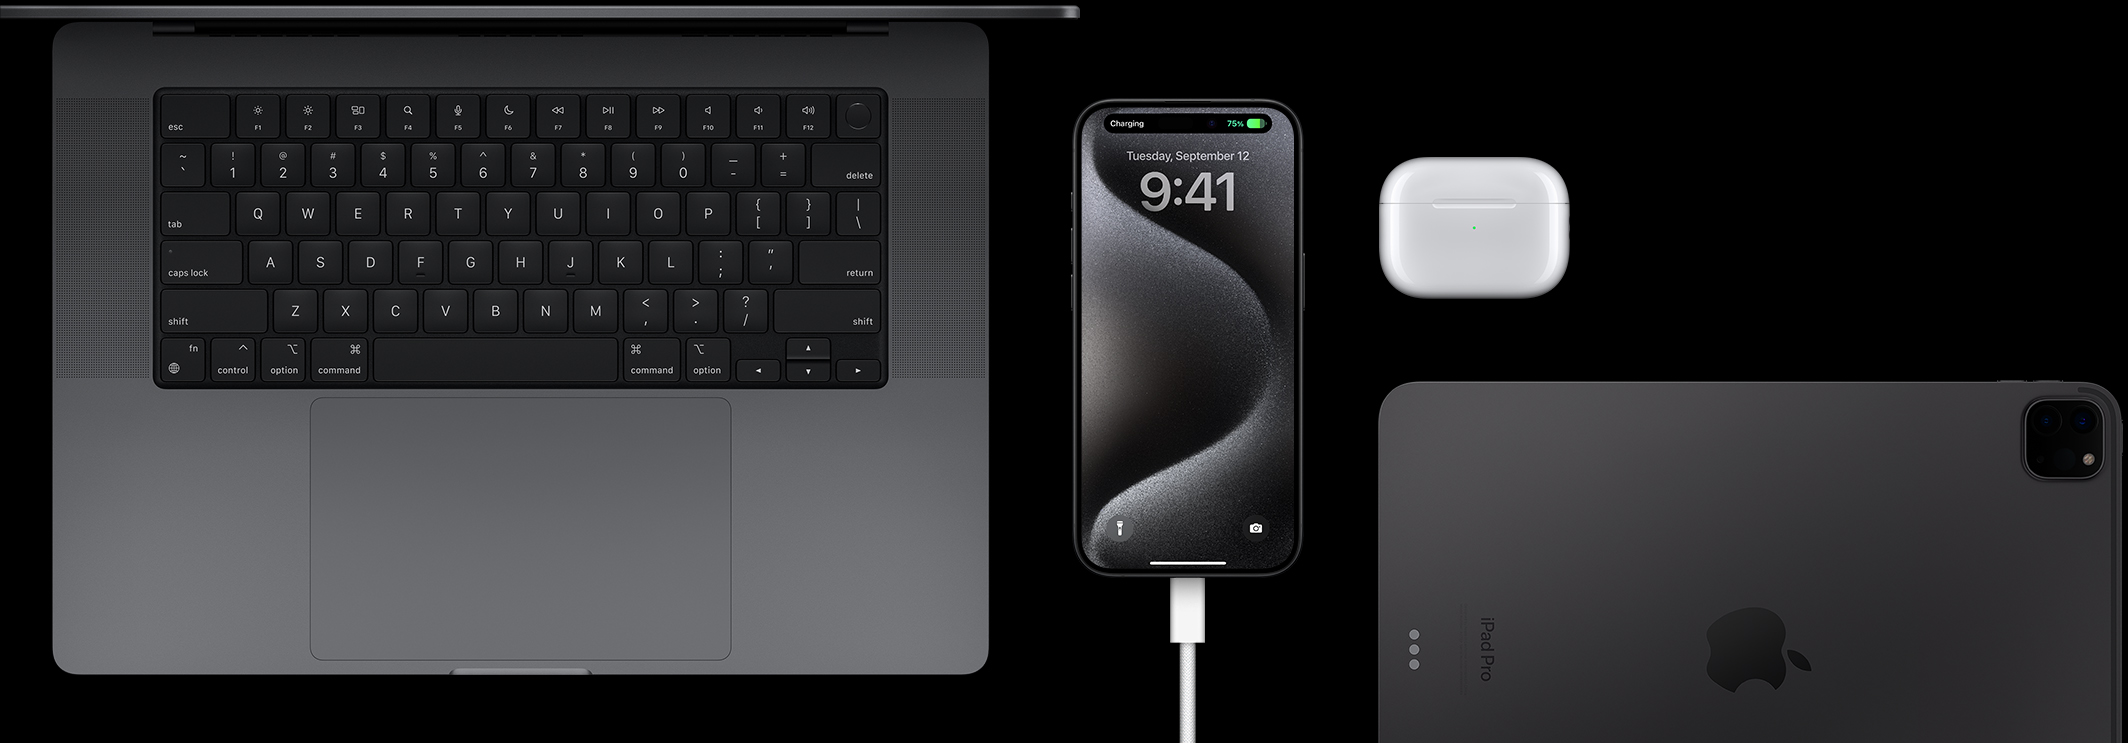 iPhone 15 Pro s připojeným USB-C kabelem, vedle kterého je Macbook Pro, AirPody Pro a iPad